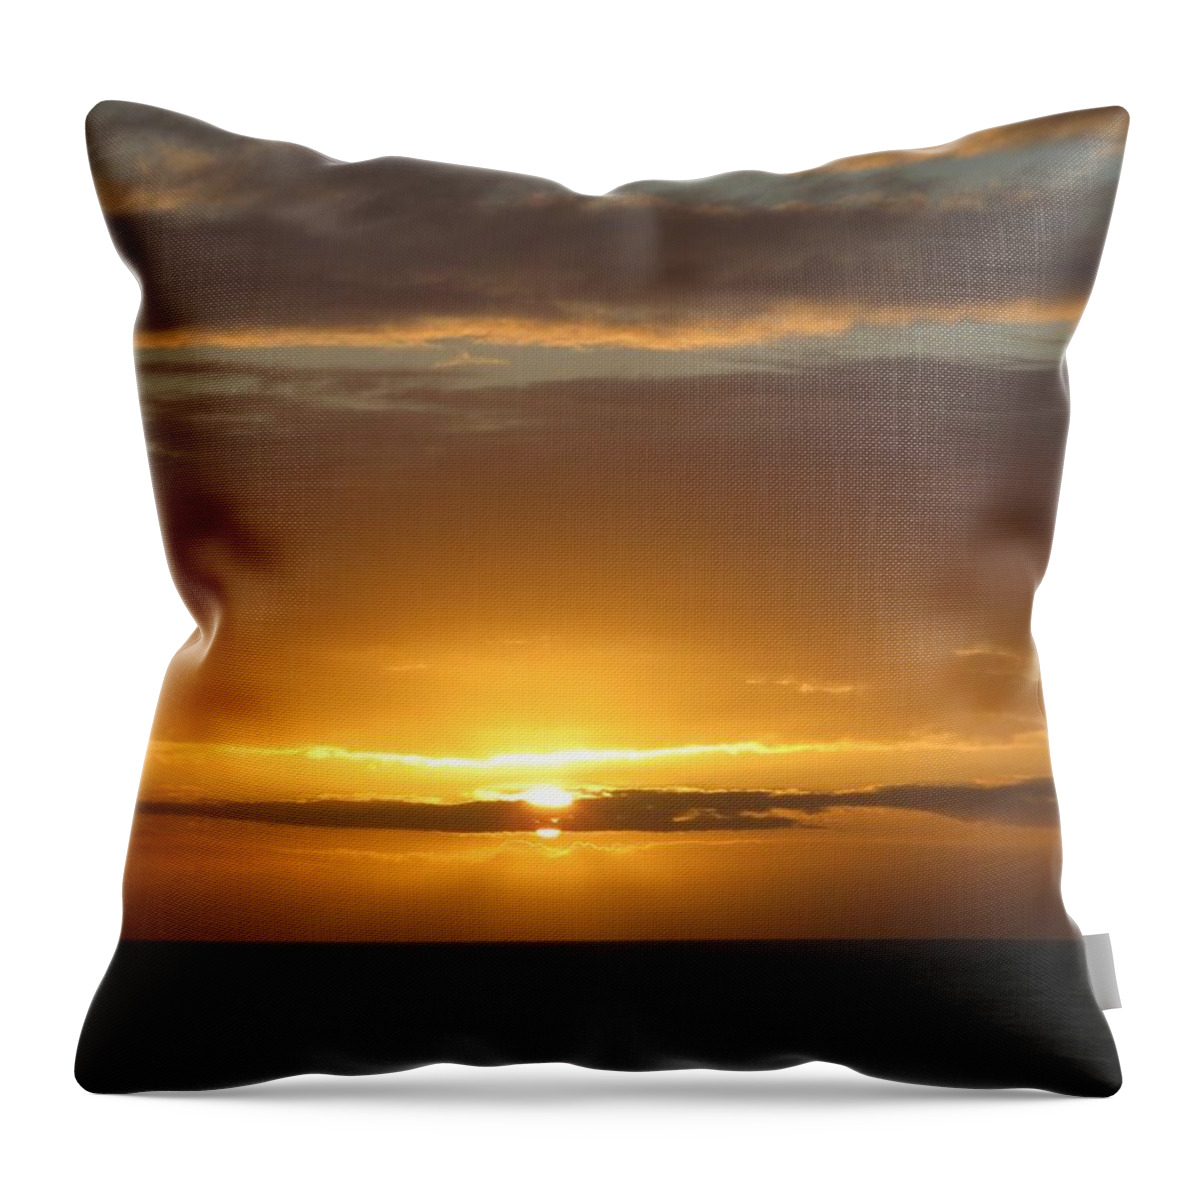 Alaska Throw Pillow featuring the photograph Alaskan Sunset by Jennifer Wheatley Wolf